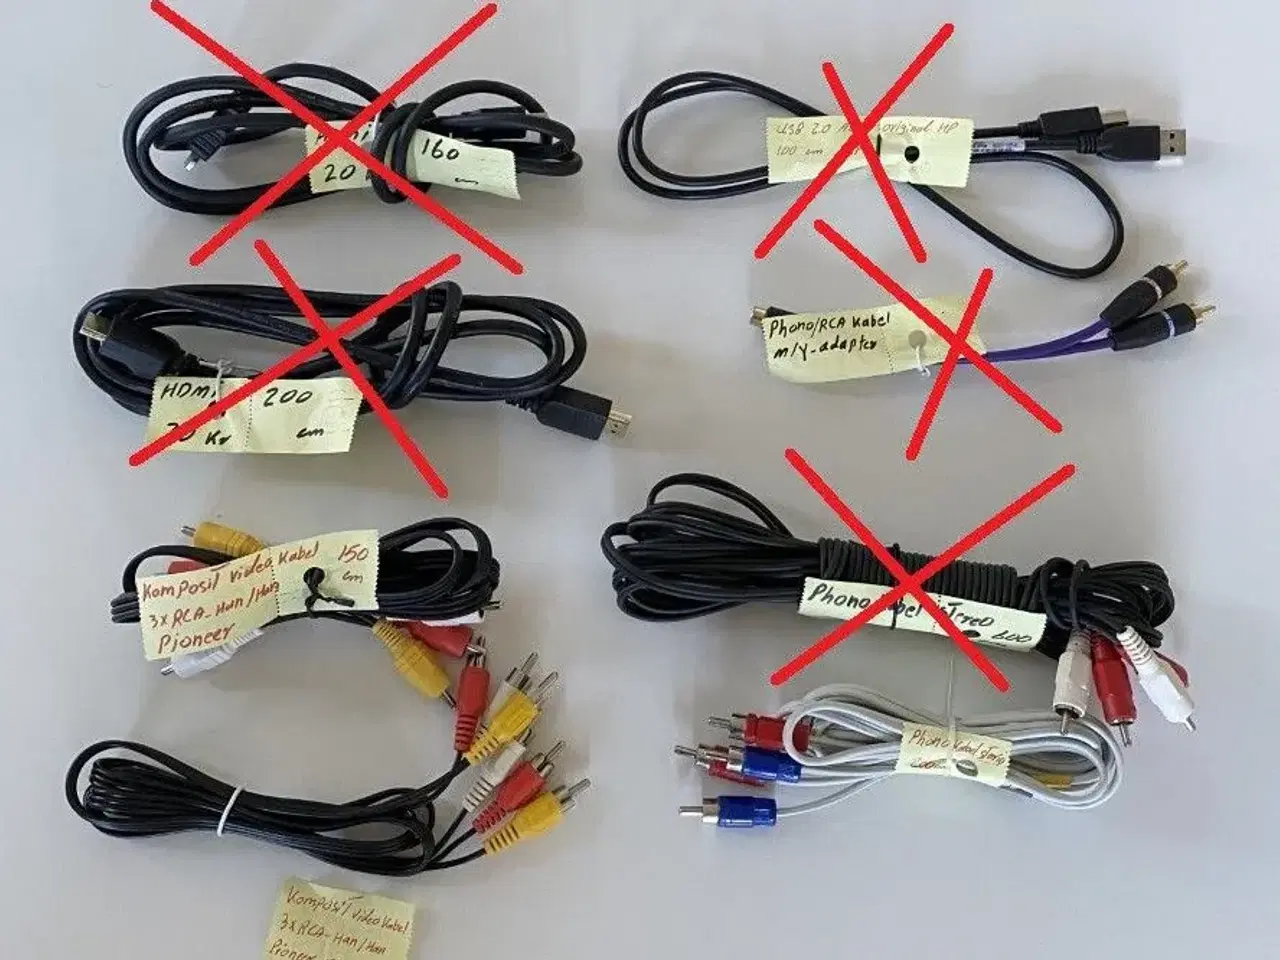 Billede 7 - Forskellige kabel/ ledning